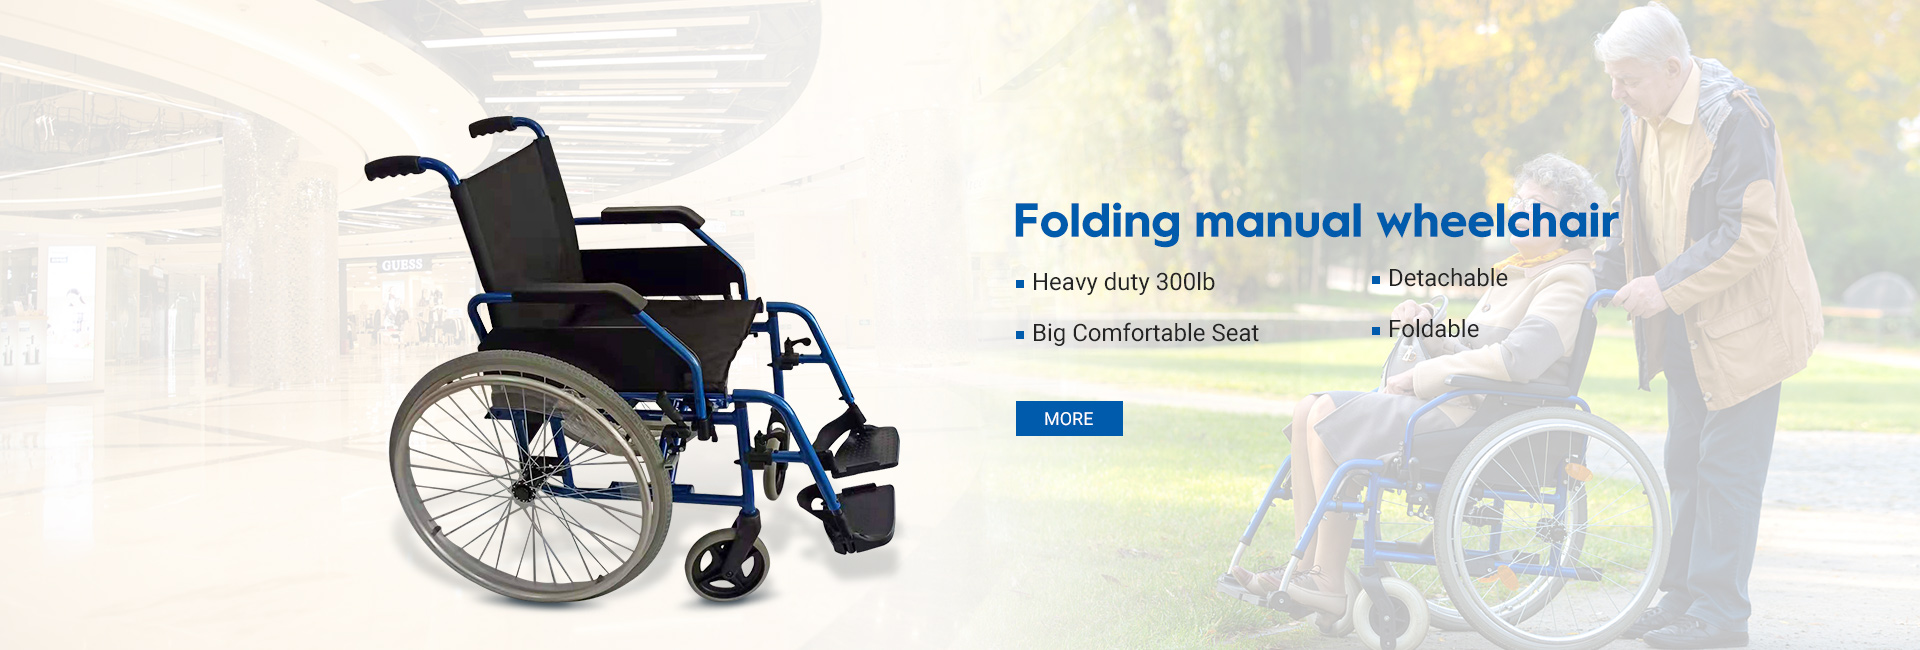 cheap manual wheelchair push chair banner1